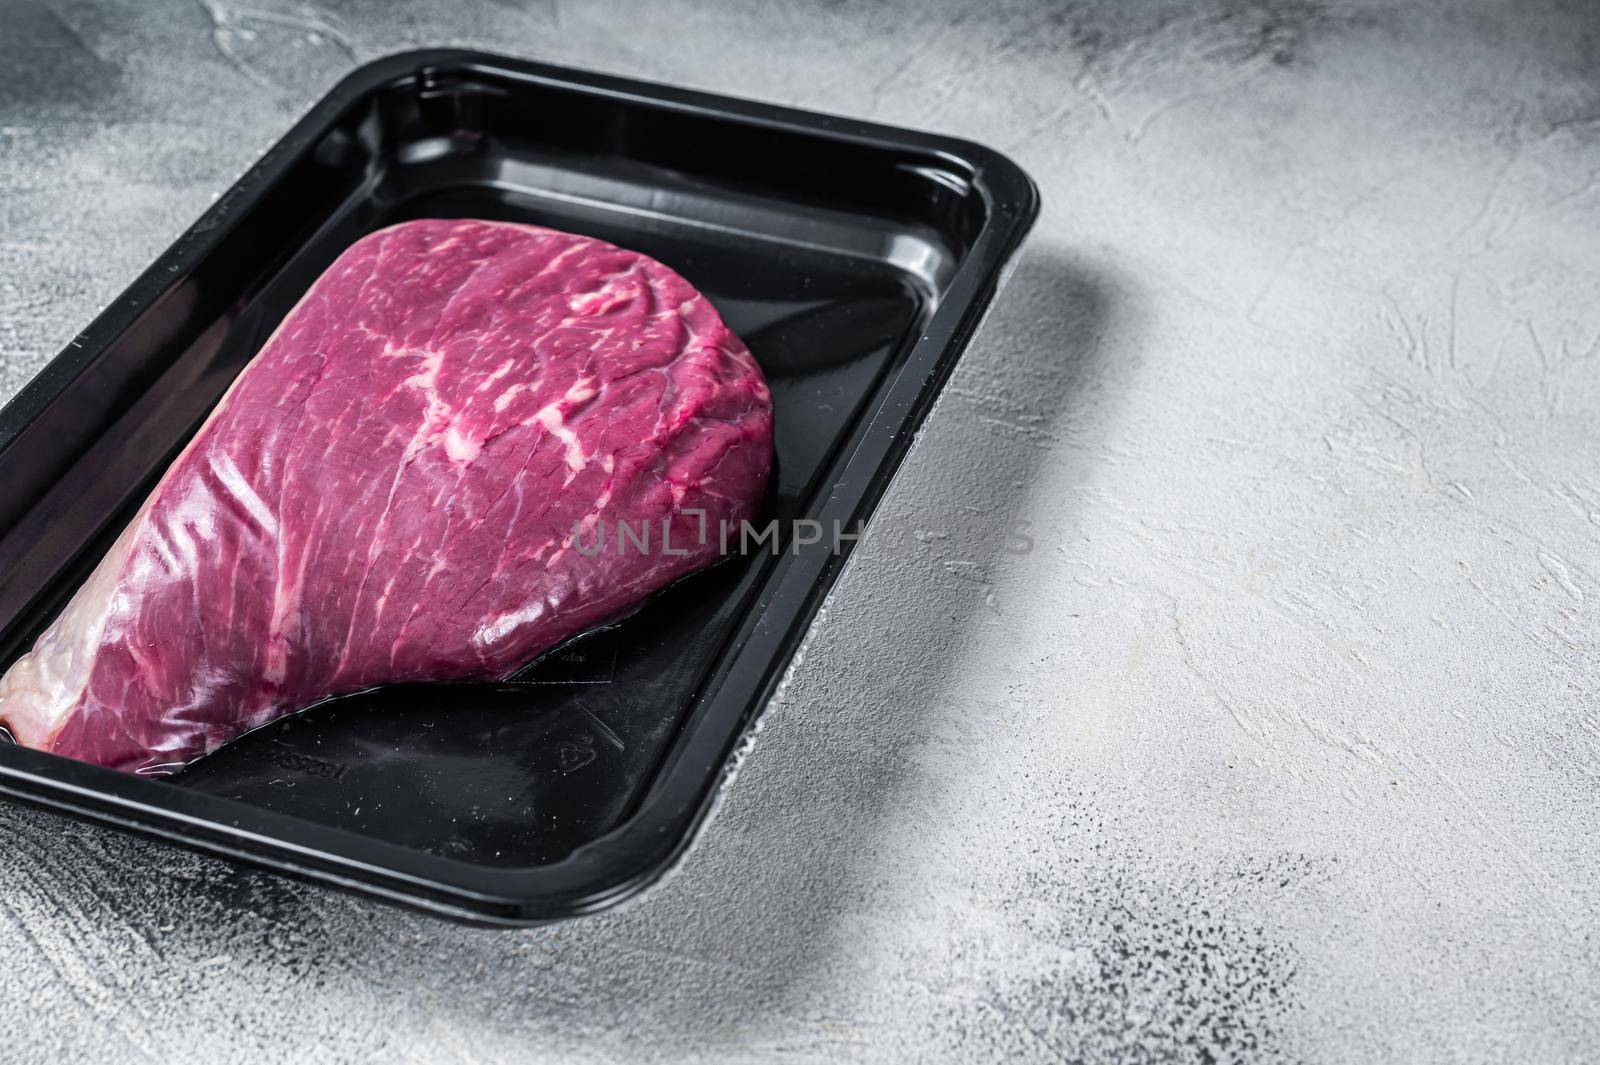 Raw cap rump steak or top sirloin beef meat steak in vacuum packaging. White background. Top view. Copy space.